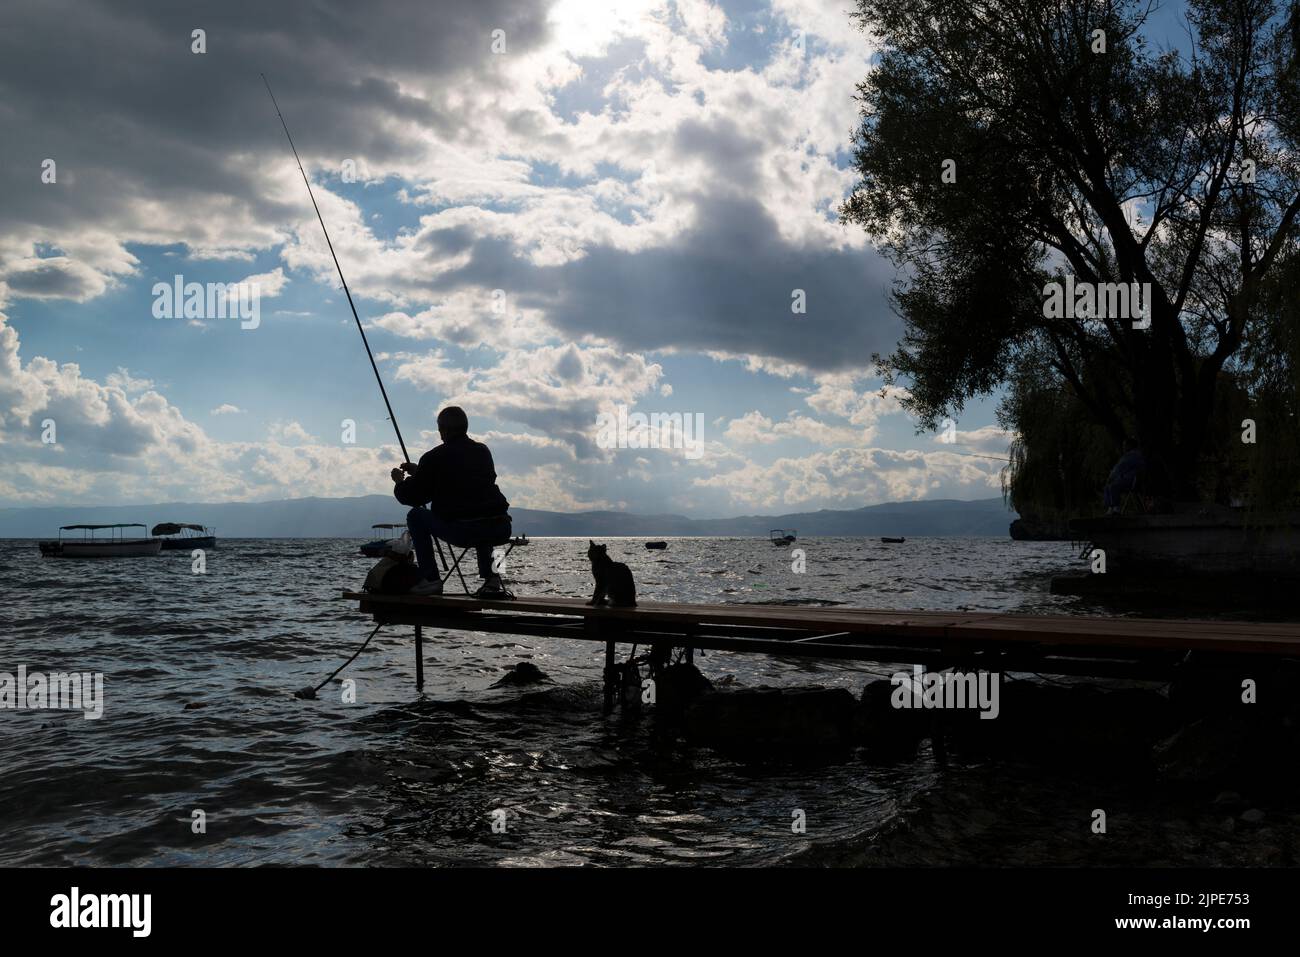 Silueta de un pescador deportivo y un gato oportunista detrás de él en un pequeño embarcadero en el lago Ohrid, en el norte de Macedonia. Foto de stock